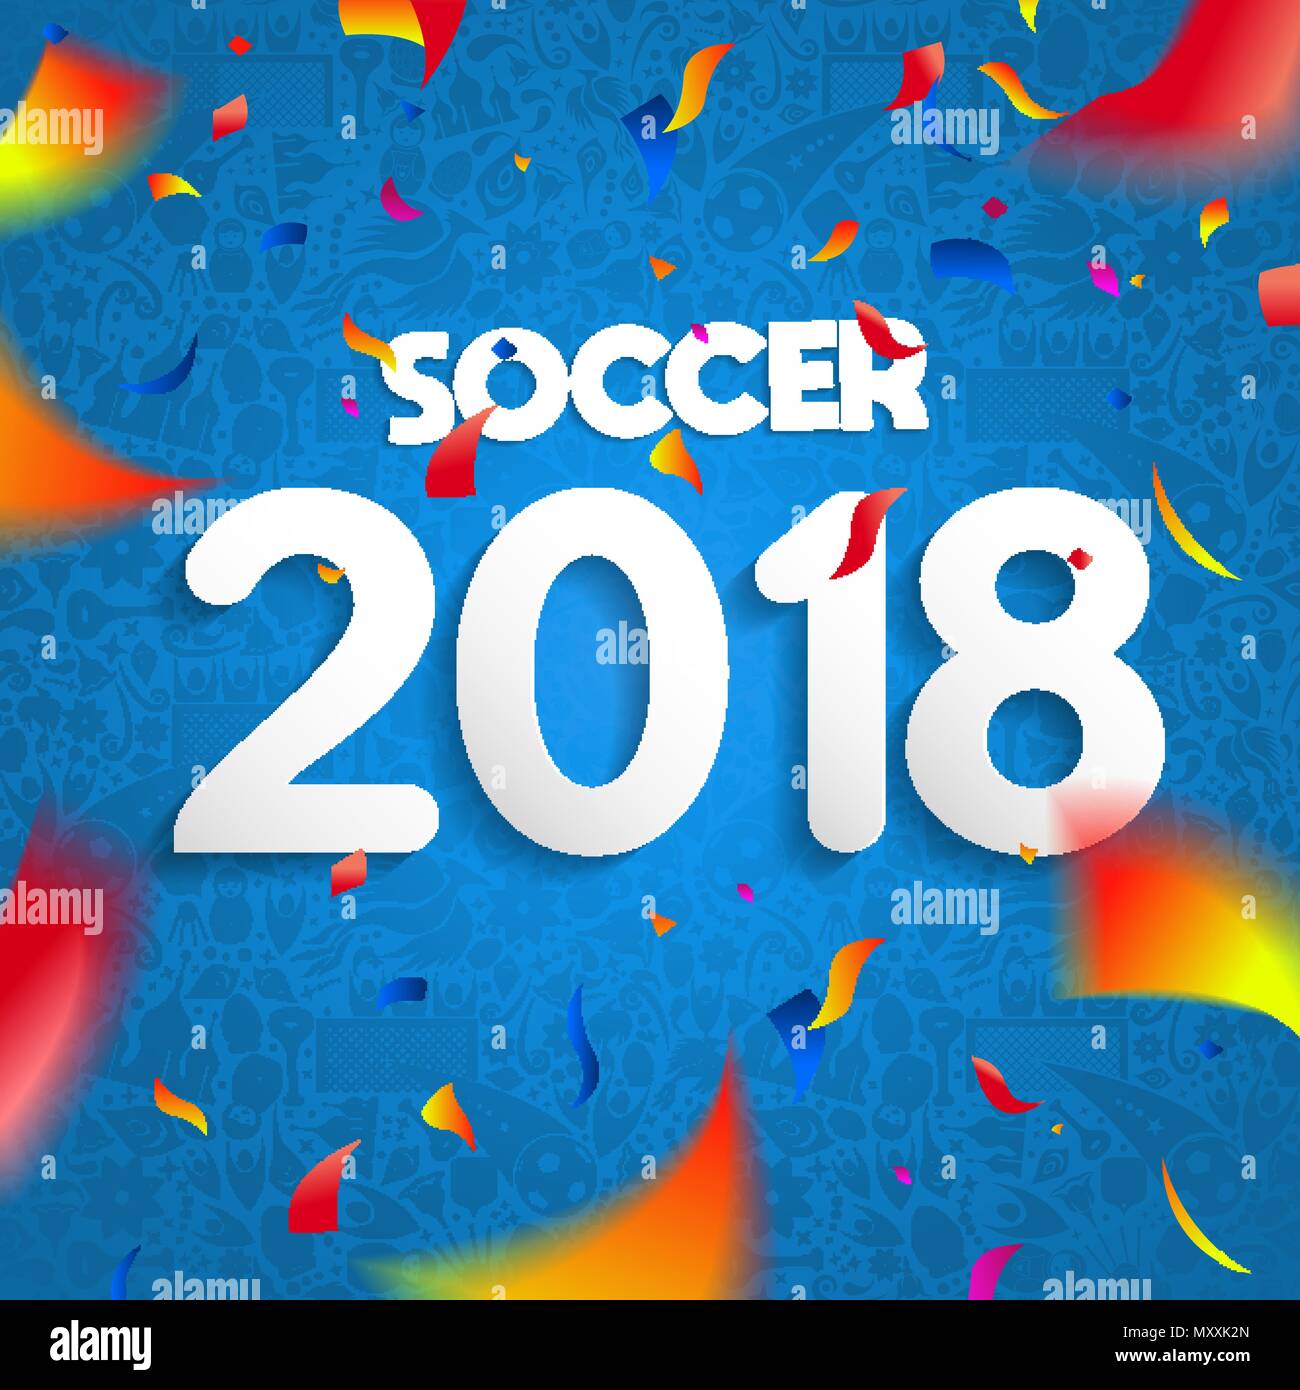 2018 Fußball-Spiel feier Plakat, bunte party Konfetti und Text Angebot für spezielle Sport Event. EPS 10 Vektor. Stock Vektor